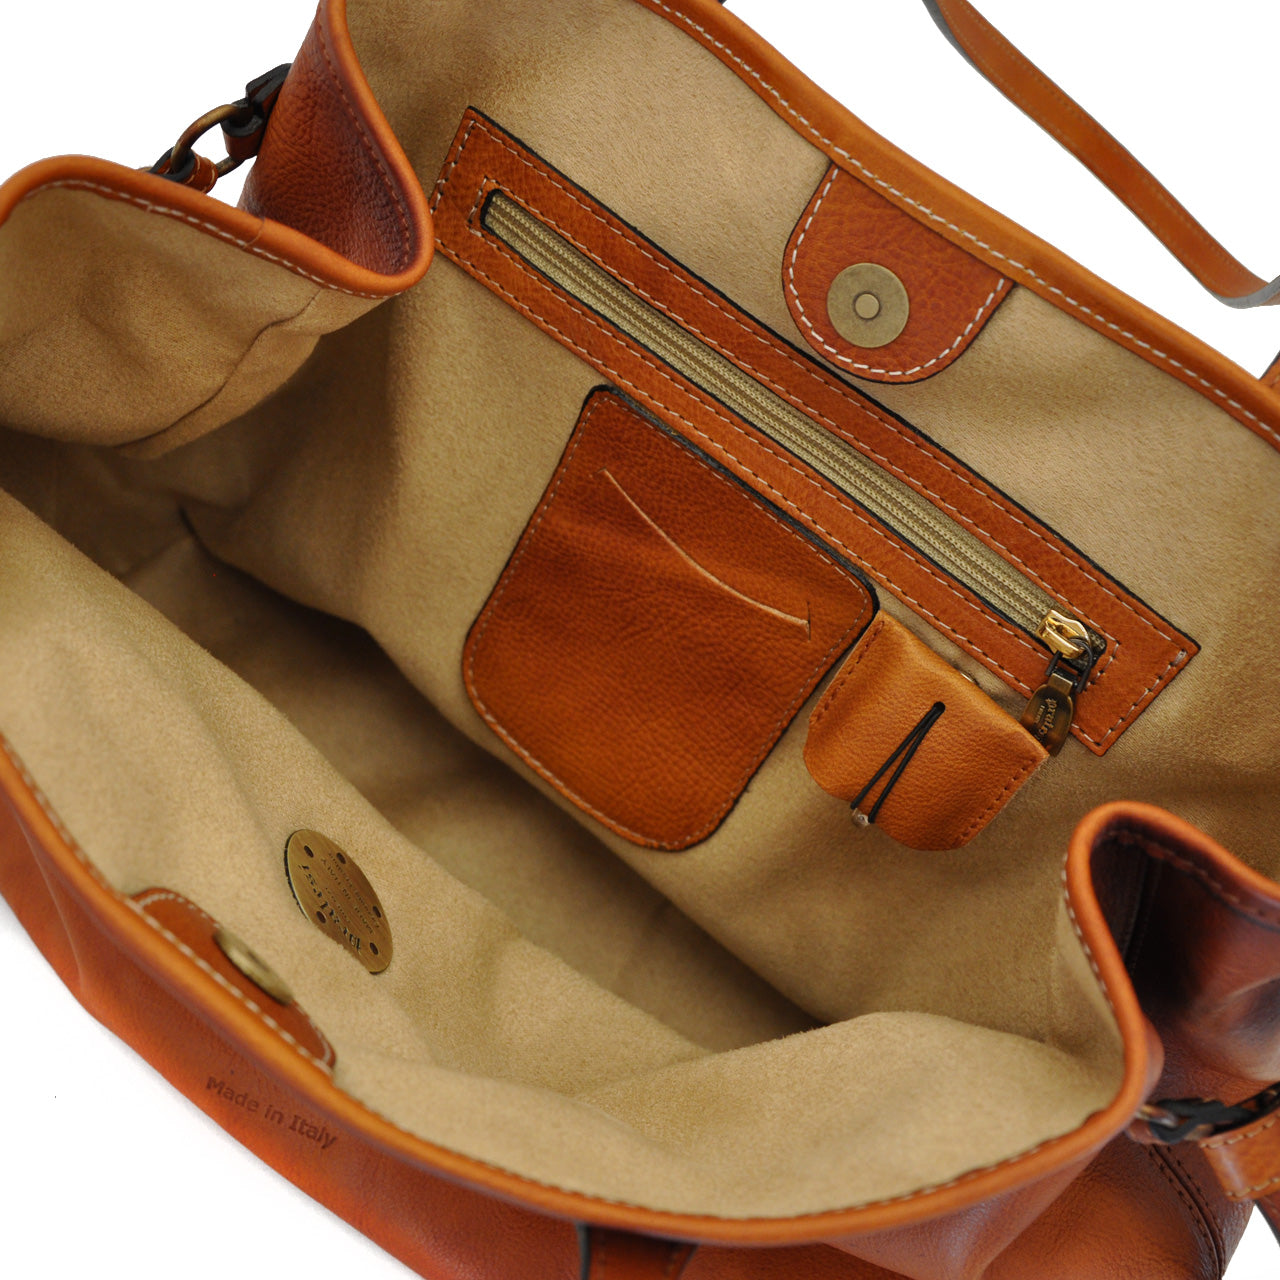 Pratesi Vetulonia Shoulder Bag in genuine Italian leather